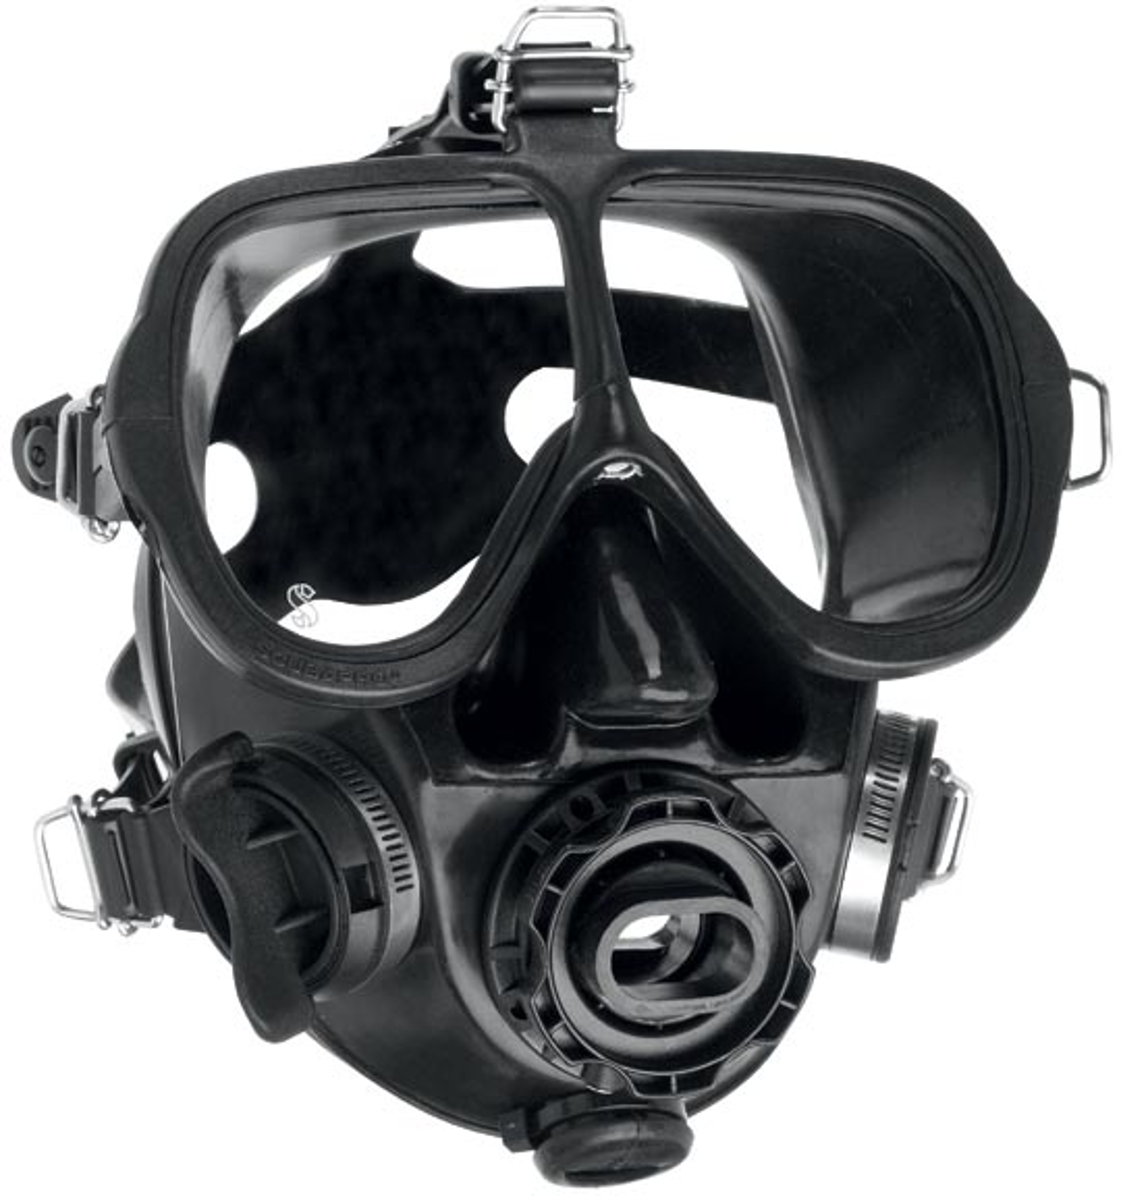 ScubaPro Full Face Dive Mask